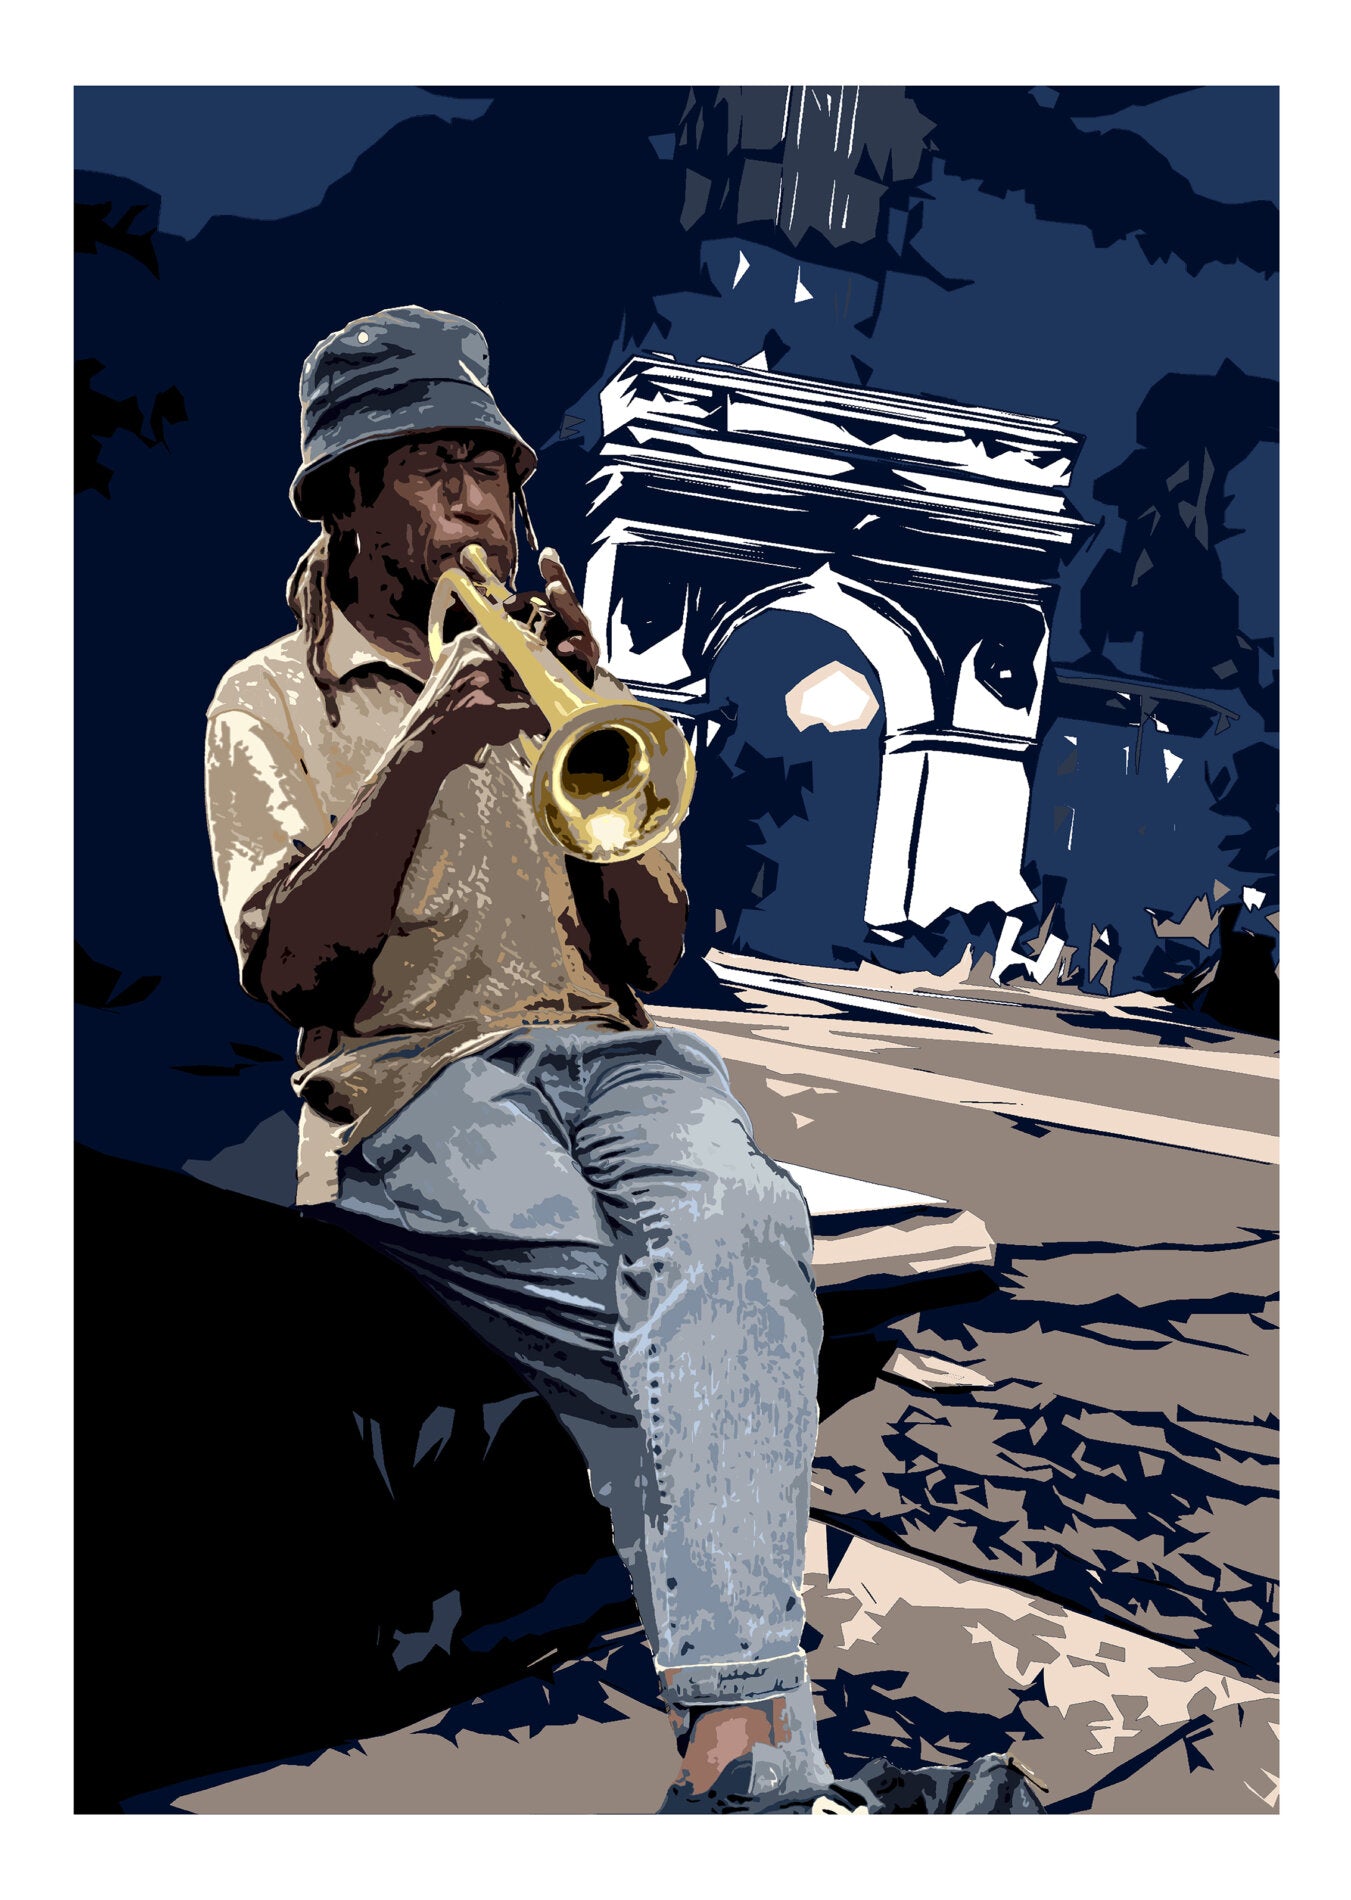 Sound Of Ny di Any. Stampa giclée stampa su carta 320 gsm edizione limitata rappresentante un trombettista all'interno dello scenario di New York | Cd Studio d'Arte